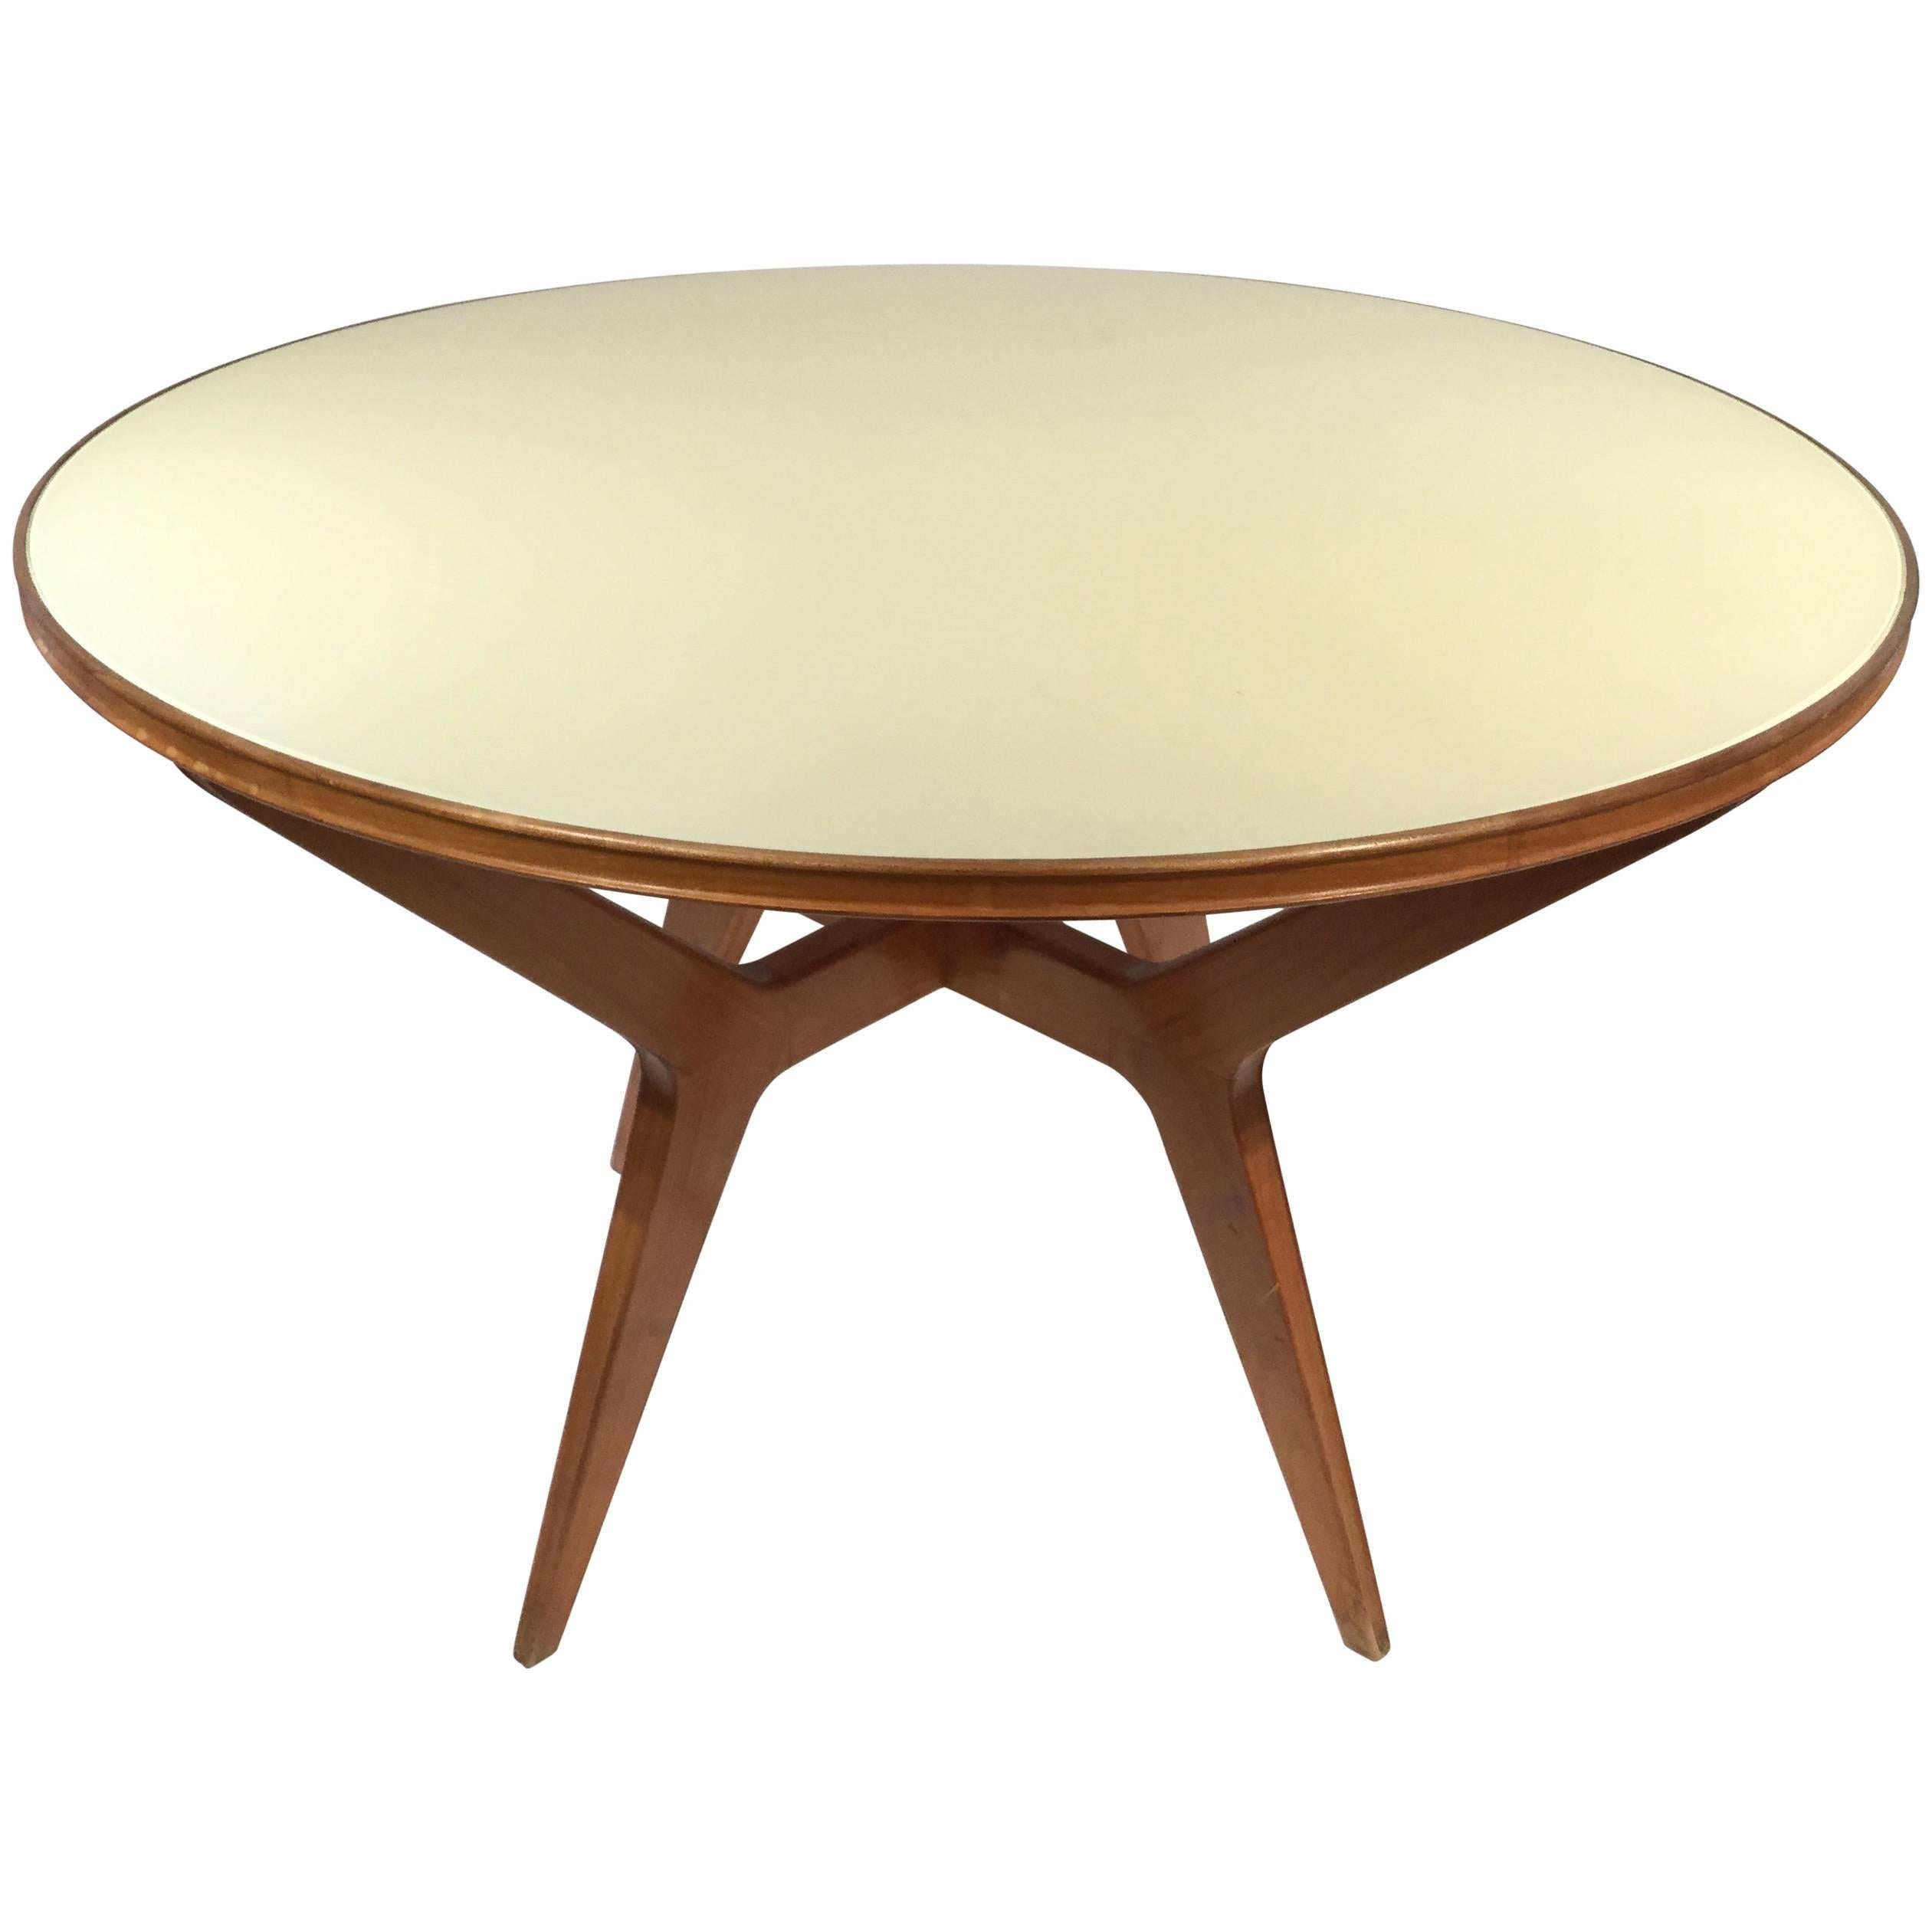 Italian Designed Circular Dinning Table, Ico Parisi, 1950